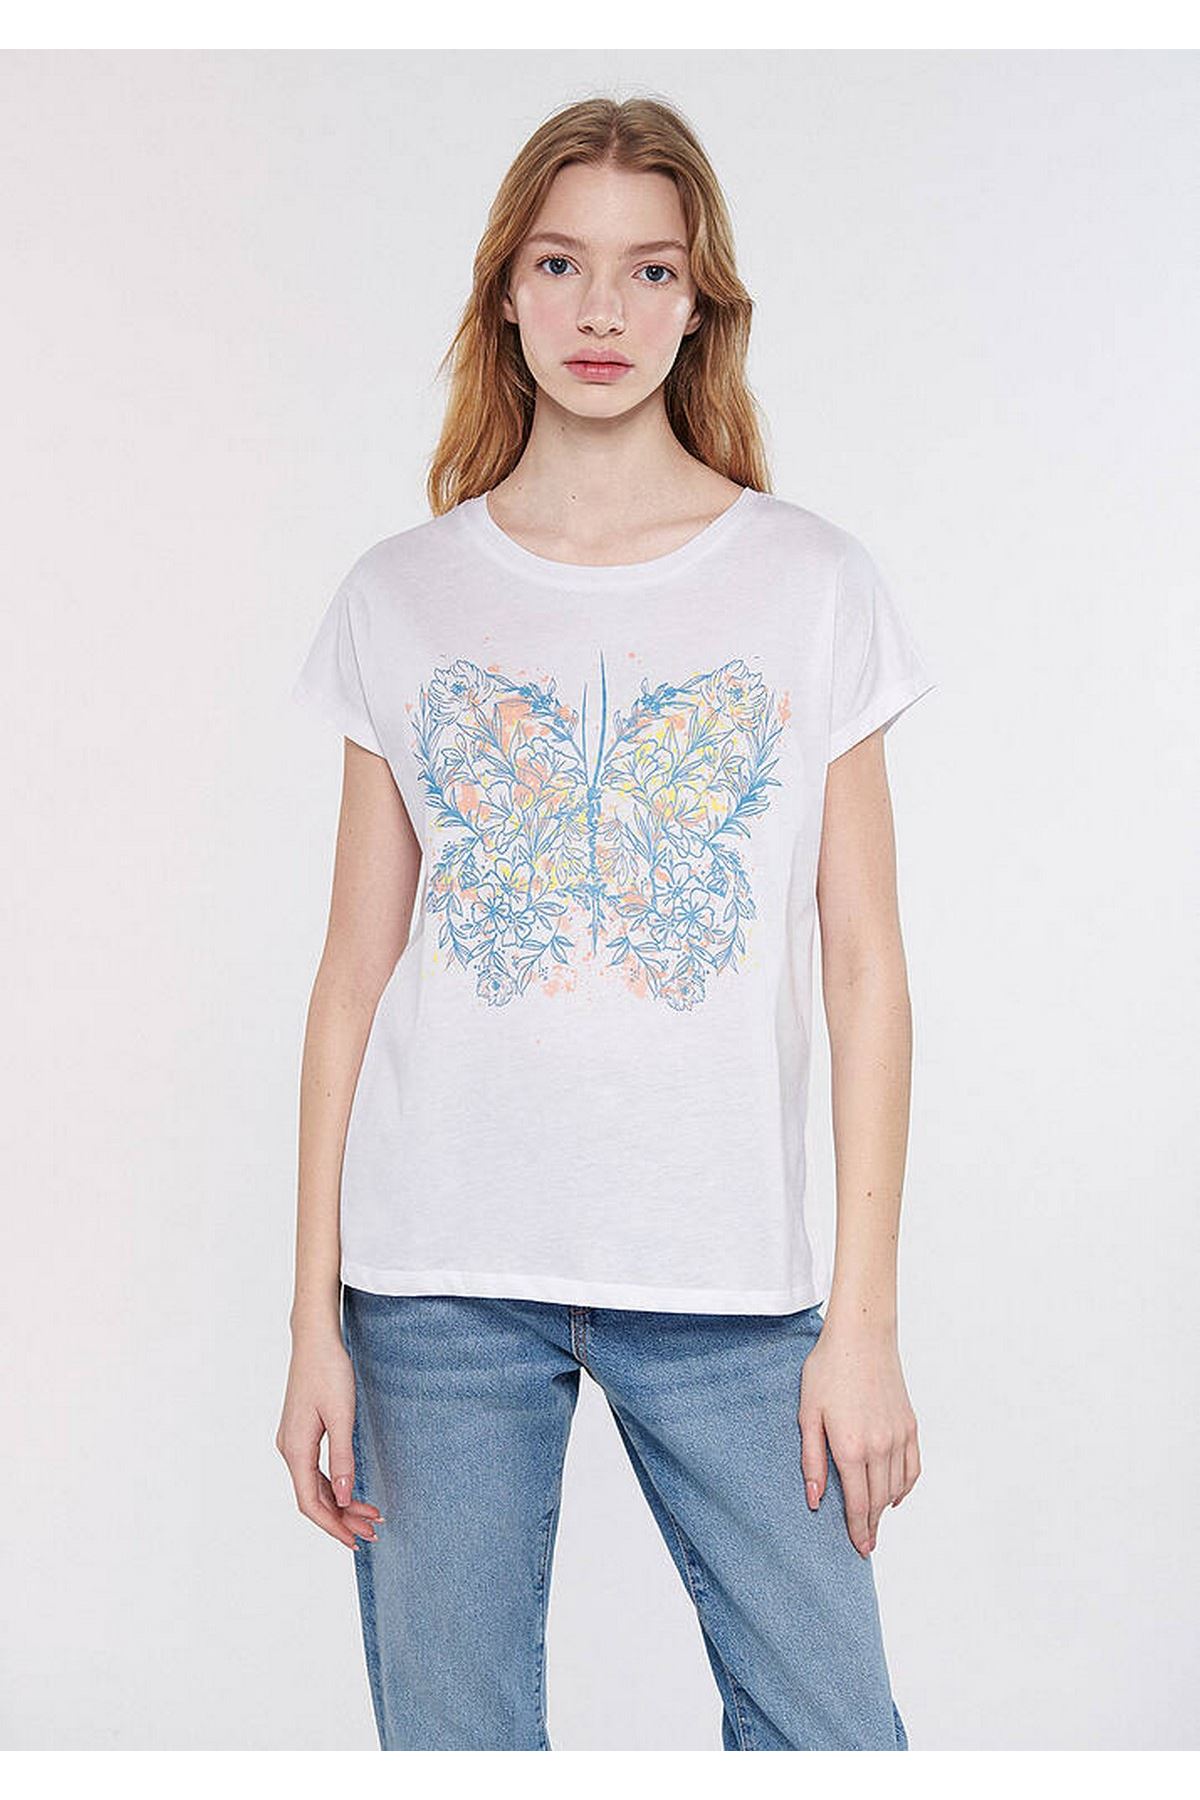 Çiçekli Kelebek Baskılı Mavi Kadın Beyaz Tişört - M1611282-620